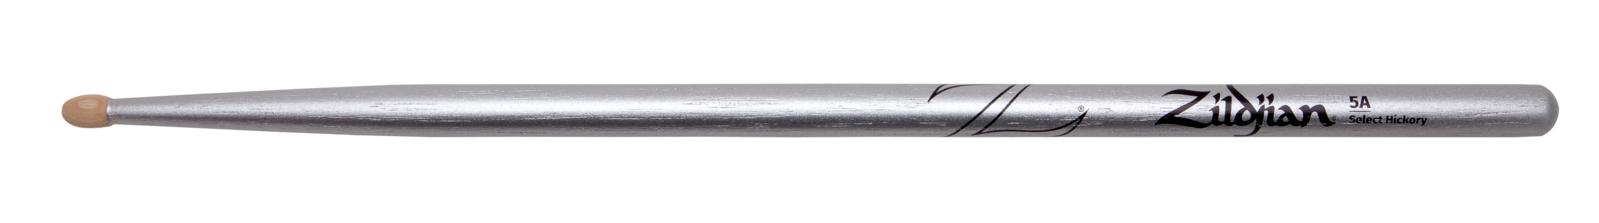 Zildjian 5A Chroma Silver (Metallic Paint)